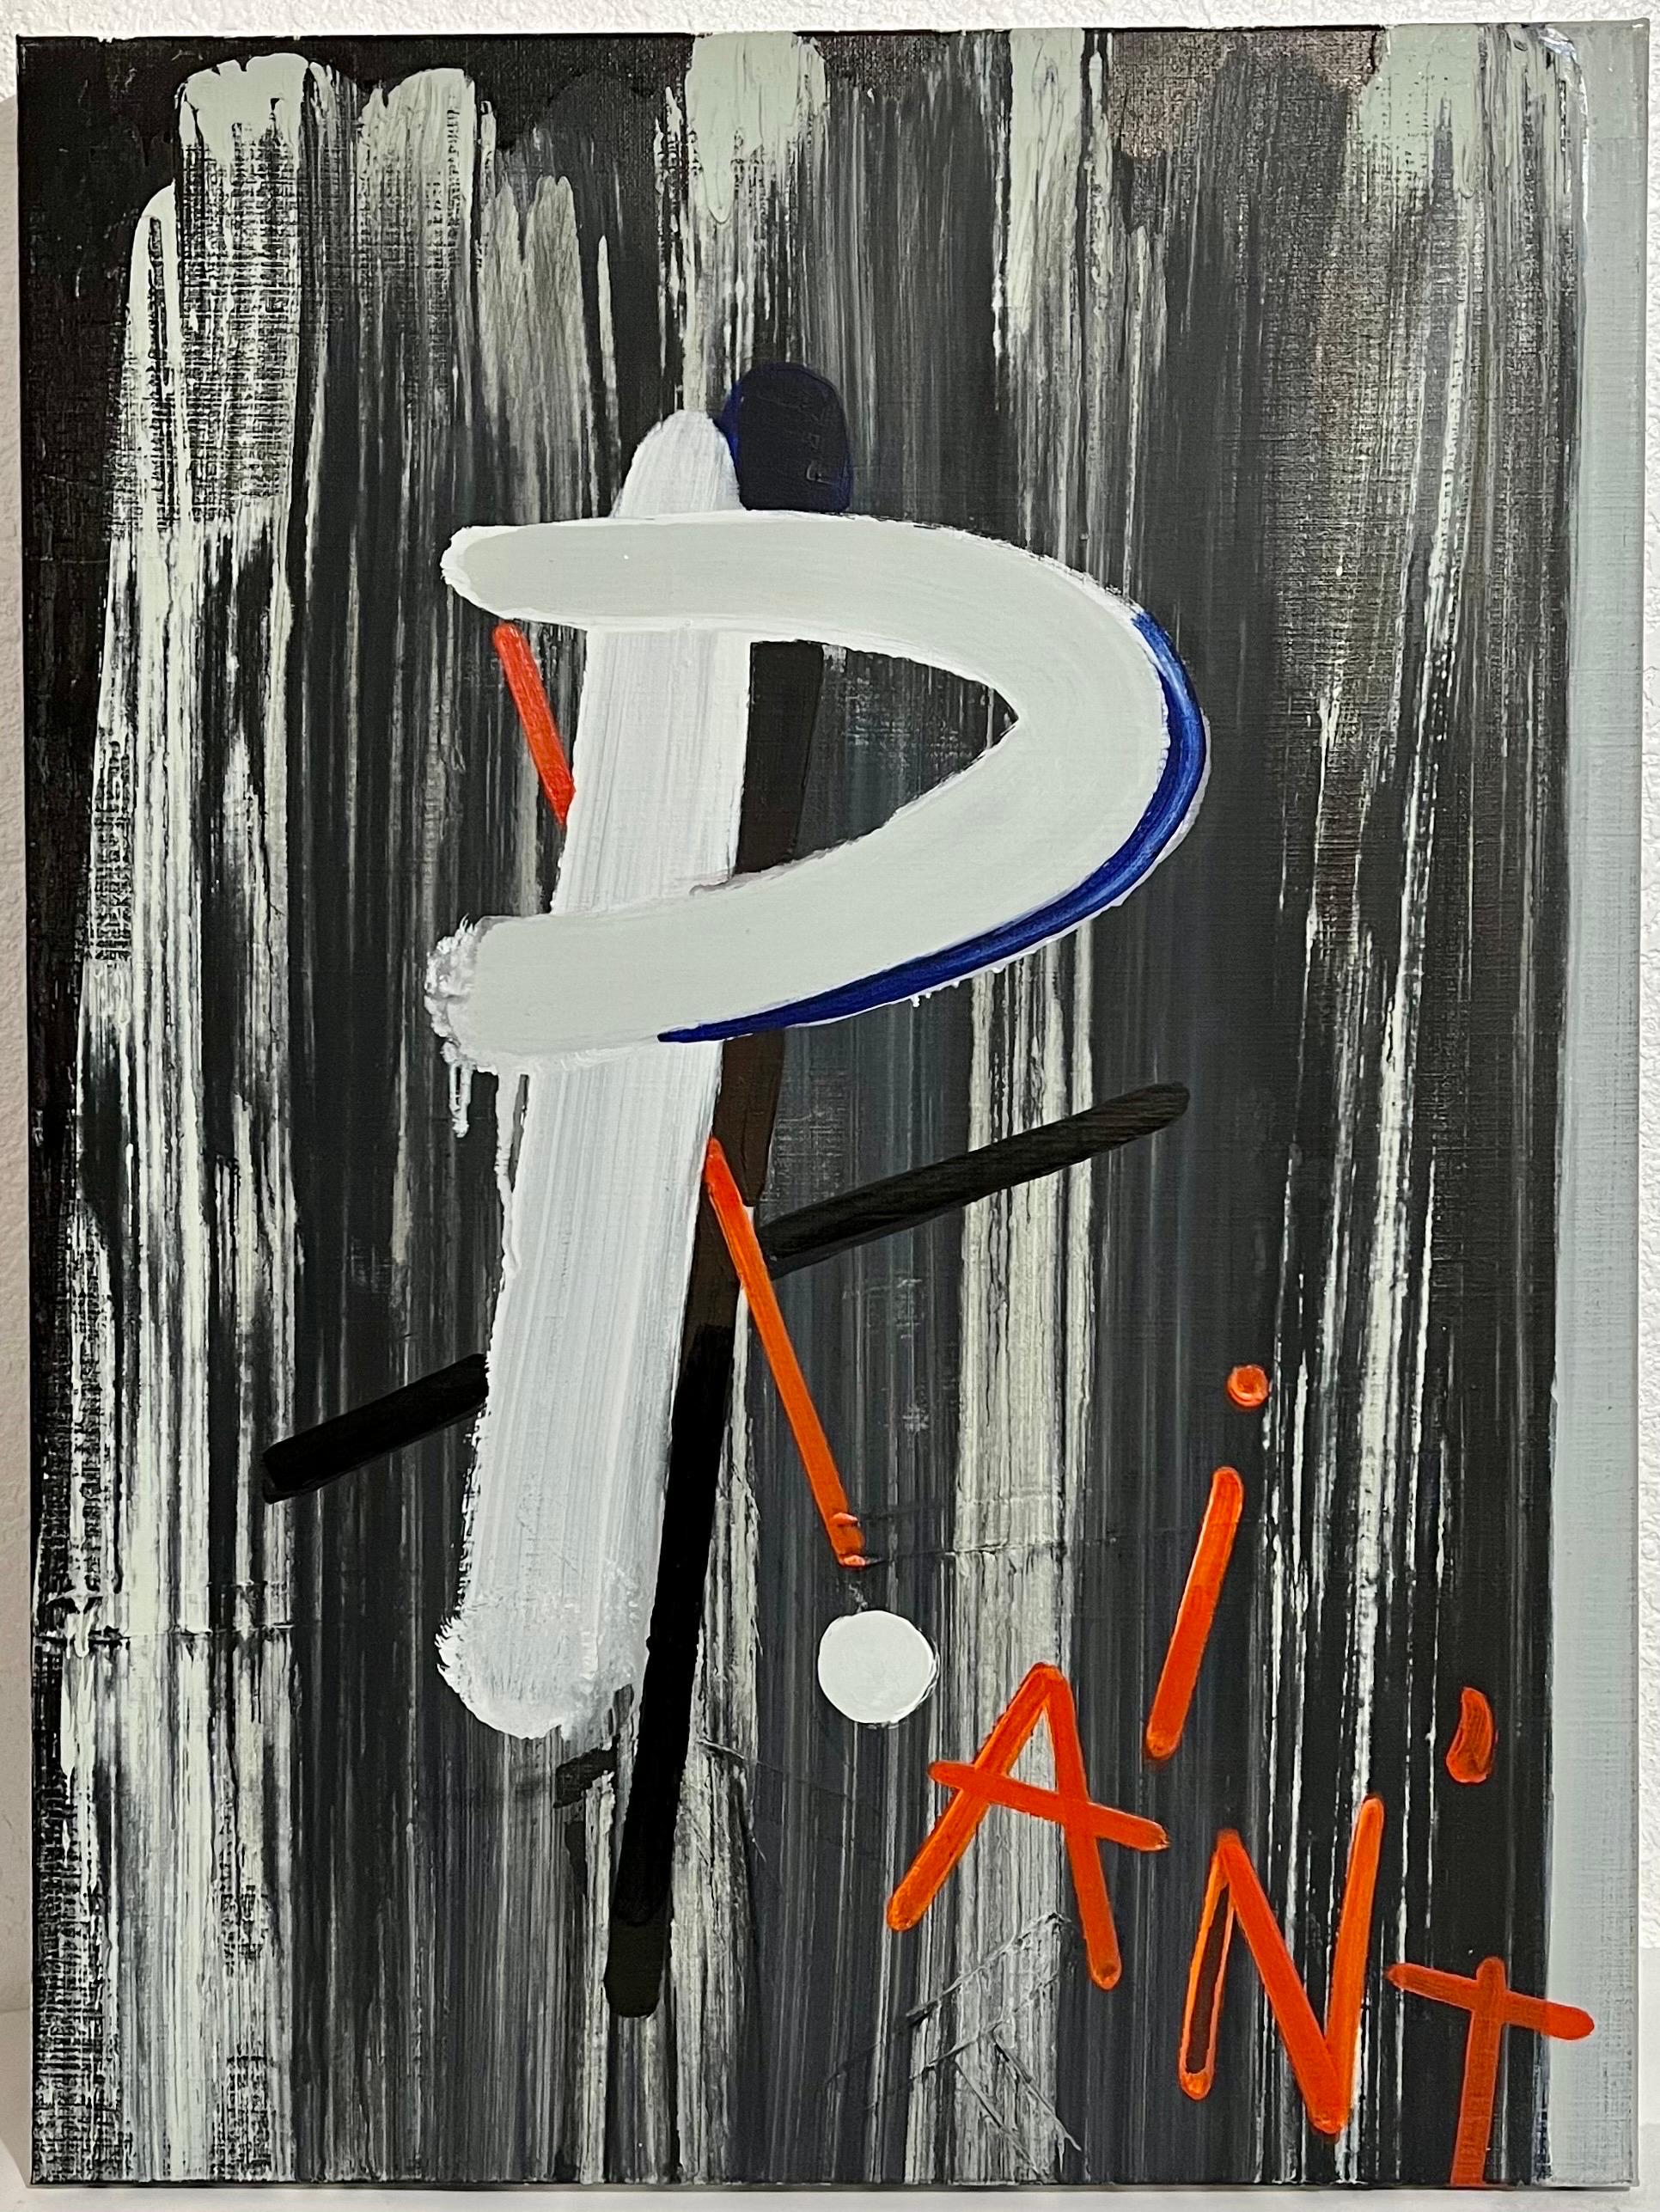 Ellen De Meutter
Peinture 2, 2007
Acrylique, encre et huile sur toile
80,0 x 59,9 cm (31,5 x 23,6 in)
Provenance : Secrets & Lies show à sa galerie américaine Roberts & Tilton, LA, en 2007.

Ellen De Meutter (1981) enseigne la peinture à l'Académie